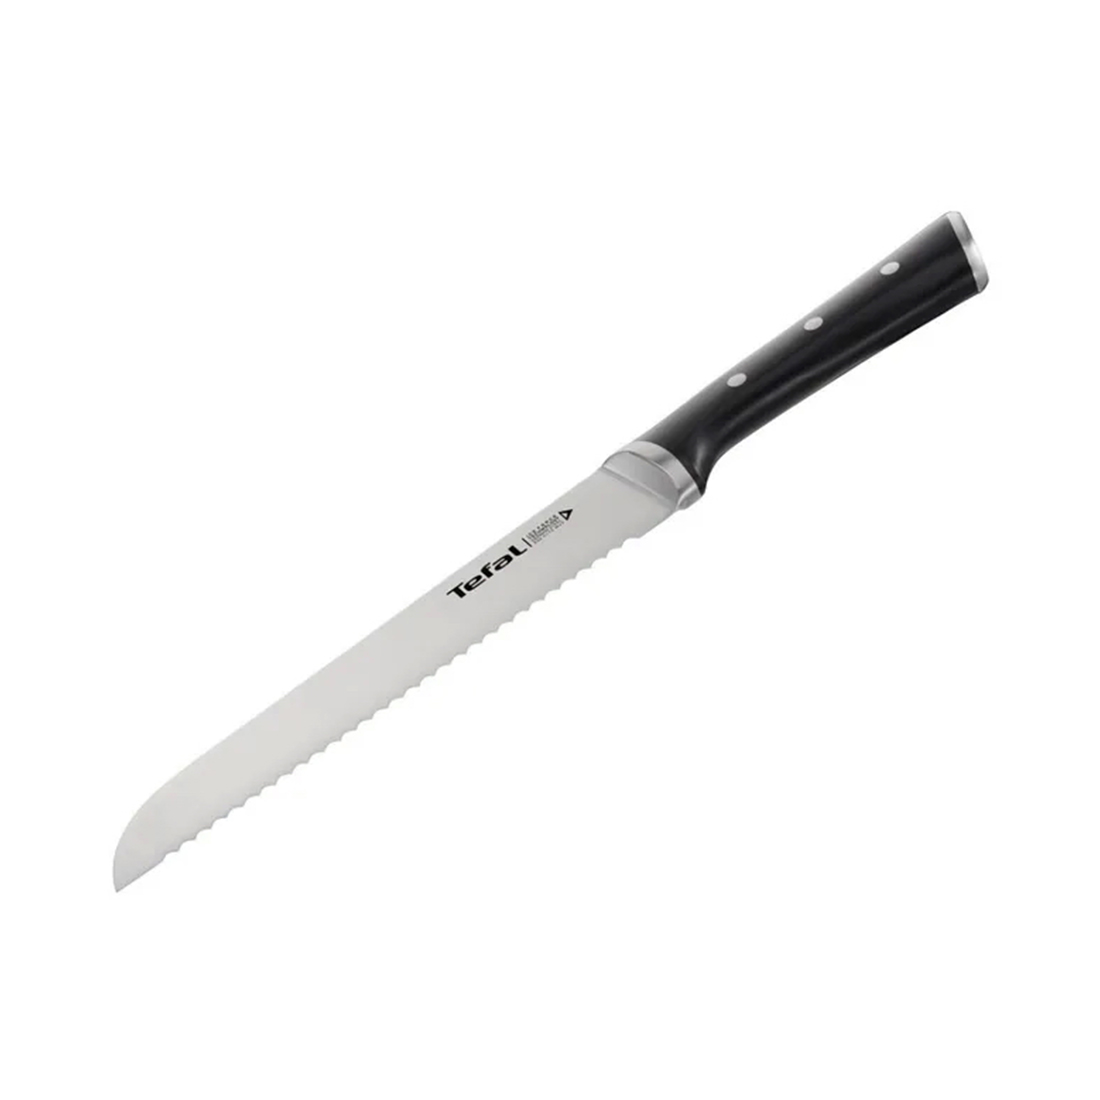 Нож для хлеба Tefal Ice Force K2320414 20 см